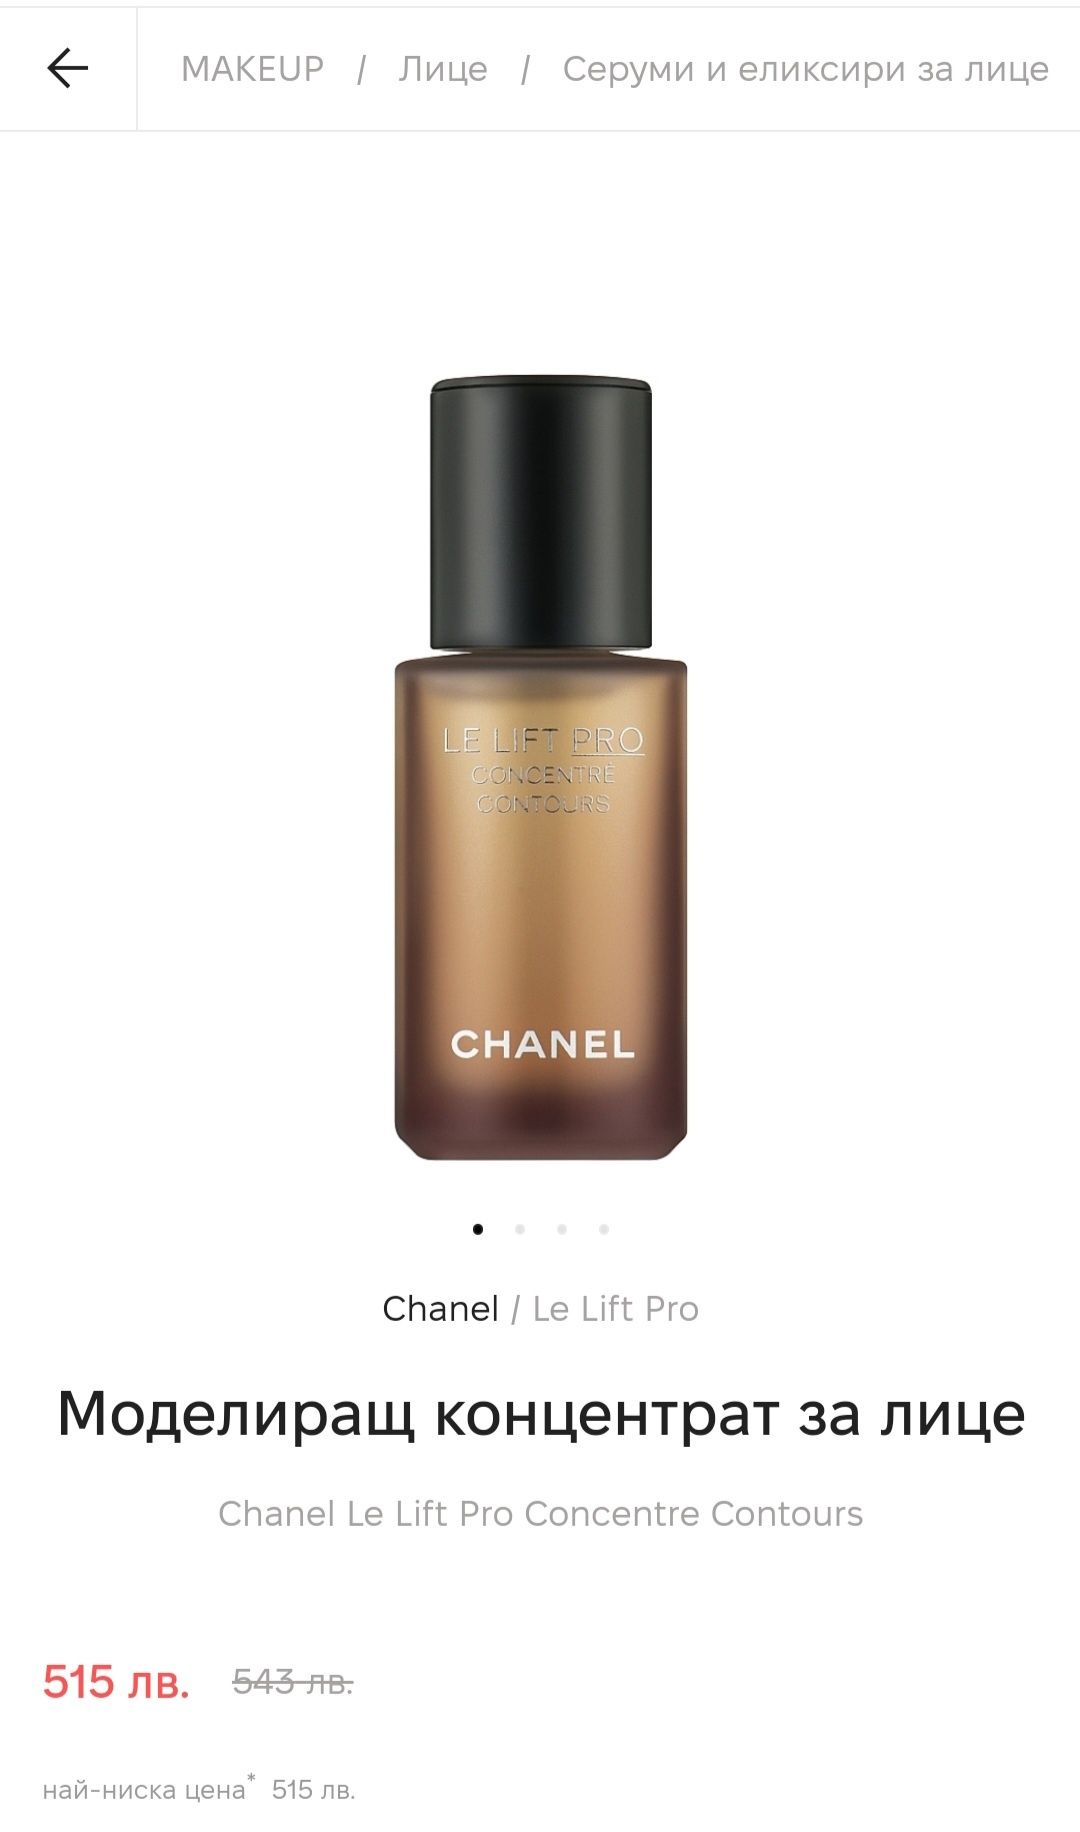 Серум / крем за лице Chanel le lift pro